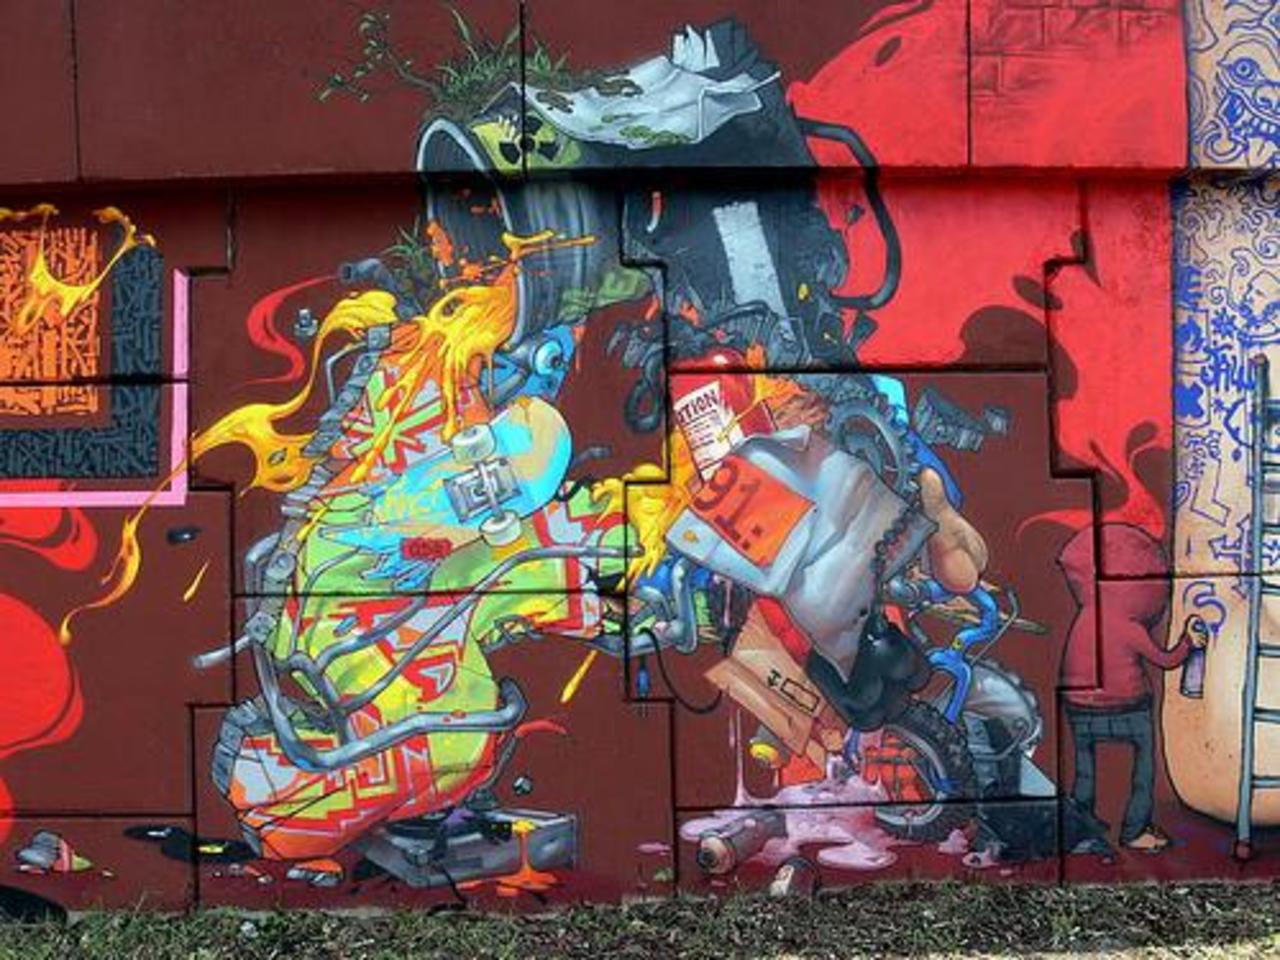 Da Mental Vaporz
http://www.isupportstreetart.com/artist/da-mental-vaporz/
#streetart #urbanart #graffiti #murals #art http://t.co/iiM7XK4w5M